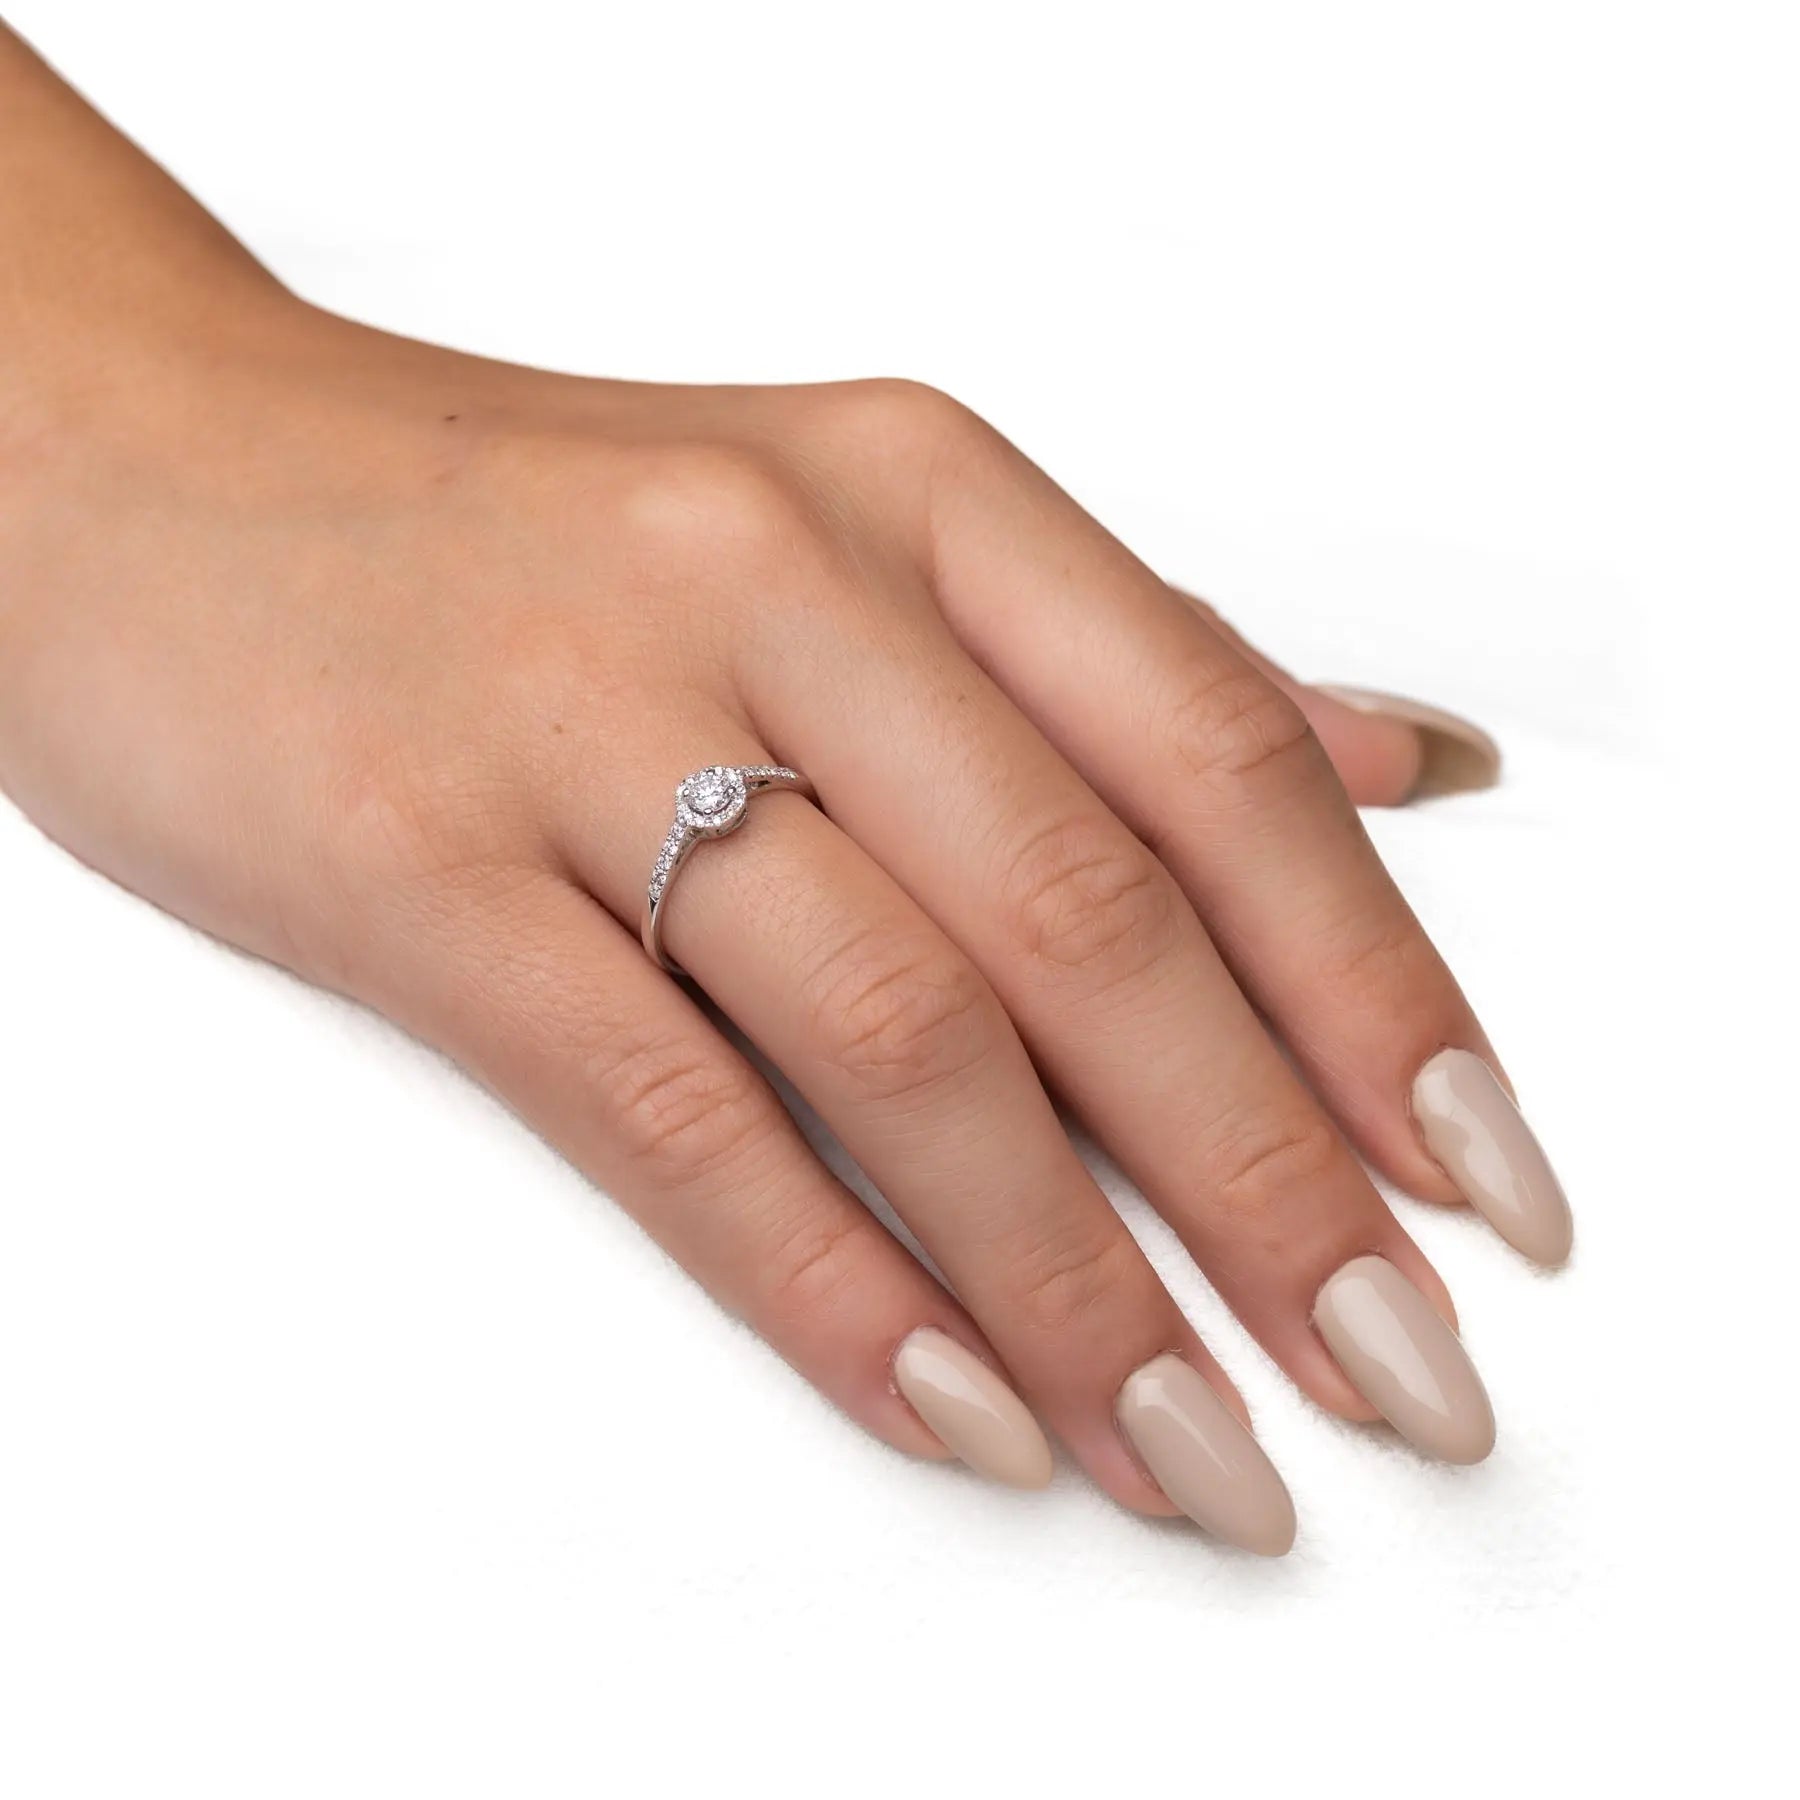 טבעת אירוסין עדינה Fermond Jewelery טבעת  אירוסין בעלת פרופיל מעוגל עם יהלום טבעי גדול מרכזי ושורת יהלומים מצידיו מרשימה במיוחד, המכילה 22 יהלומים טבעיים במשקל של 0.42 קראט. זהב לבן. הטבעת הזו משלבת את היוקרה והברק של טבעת יהלומים עם האלגנטיות הנצחית, ומציעה יופי ואופנה שמתאימים לכל אירוע. 